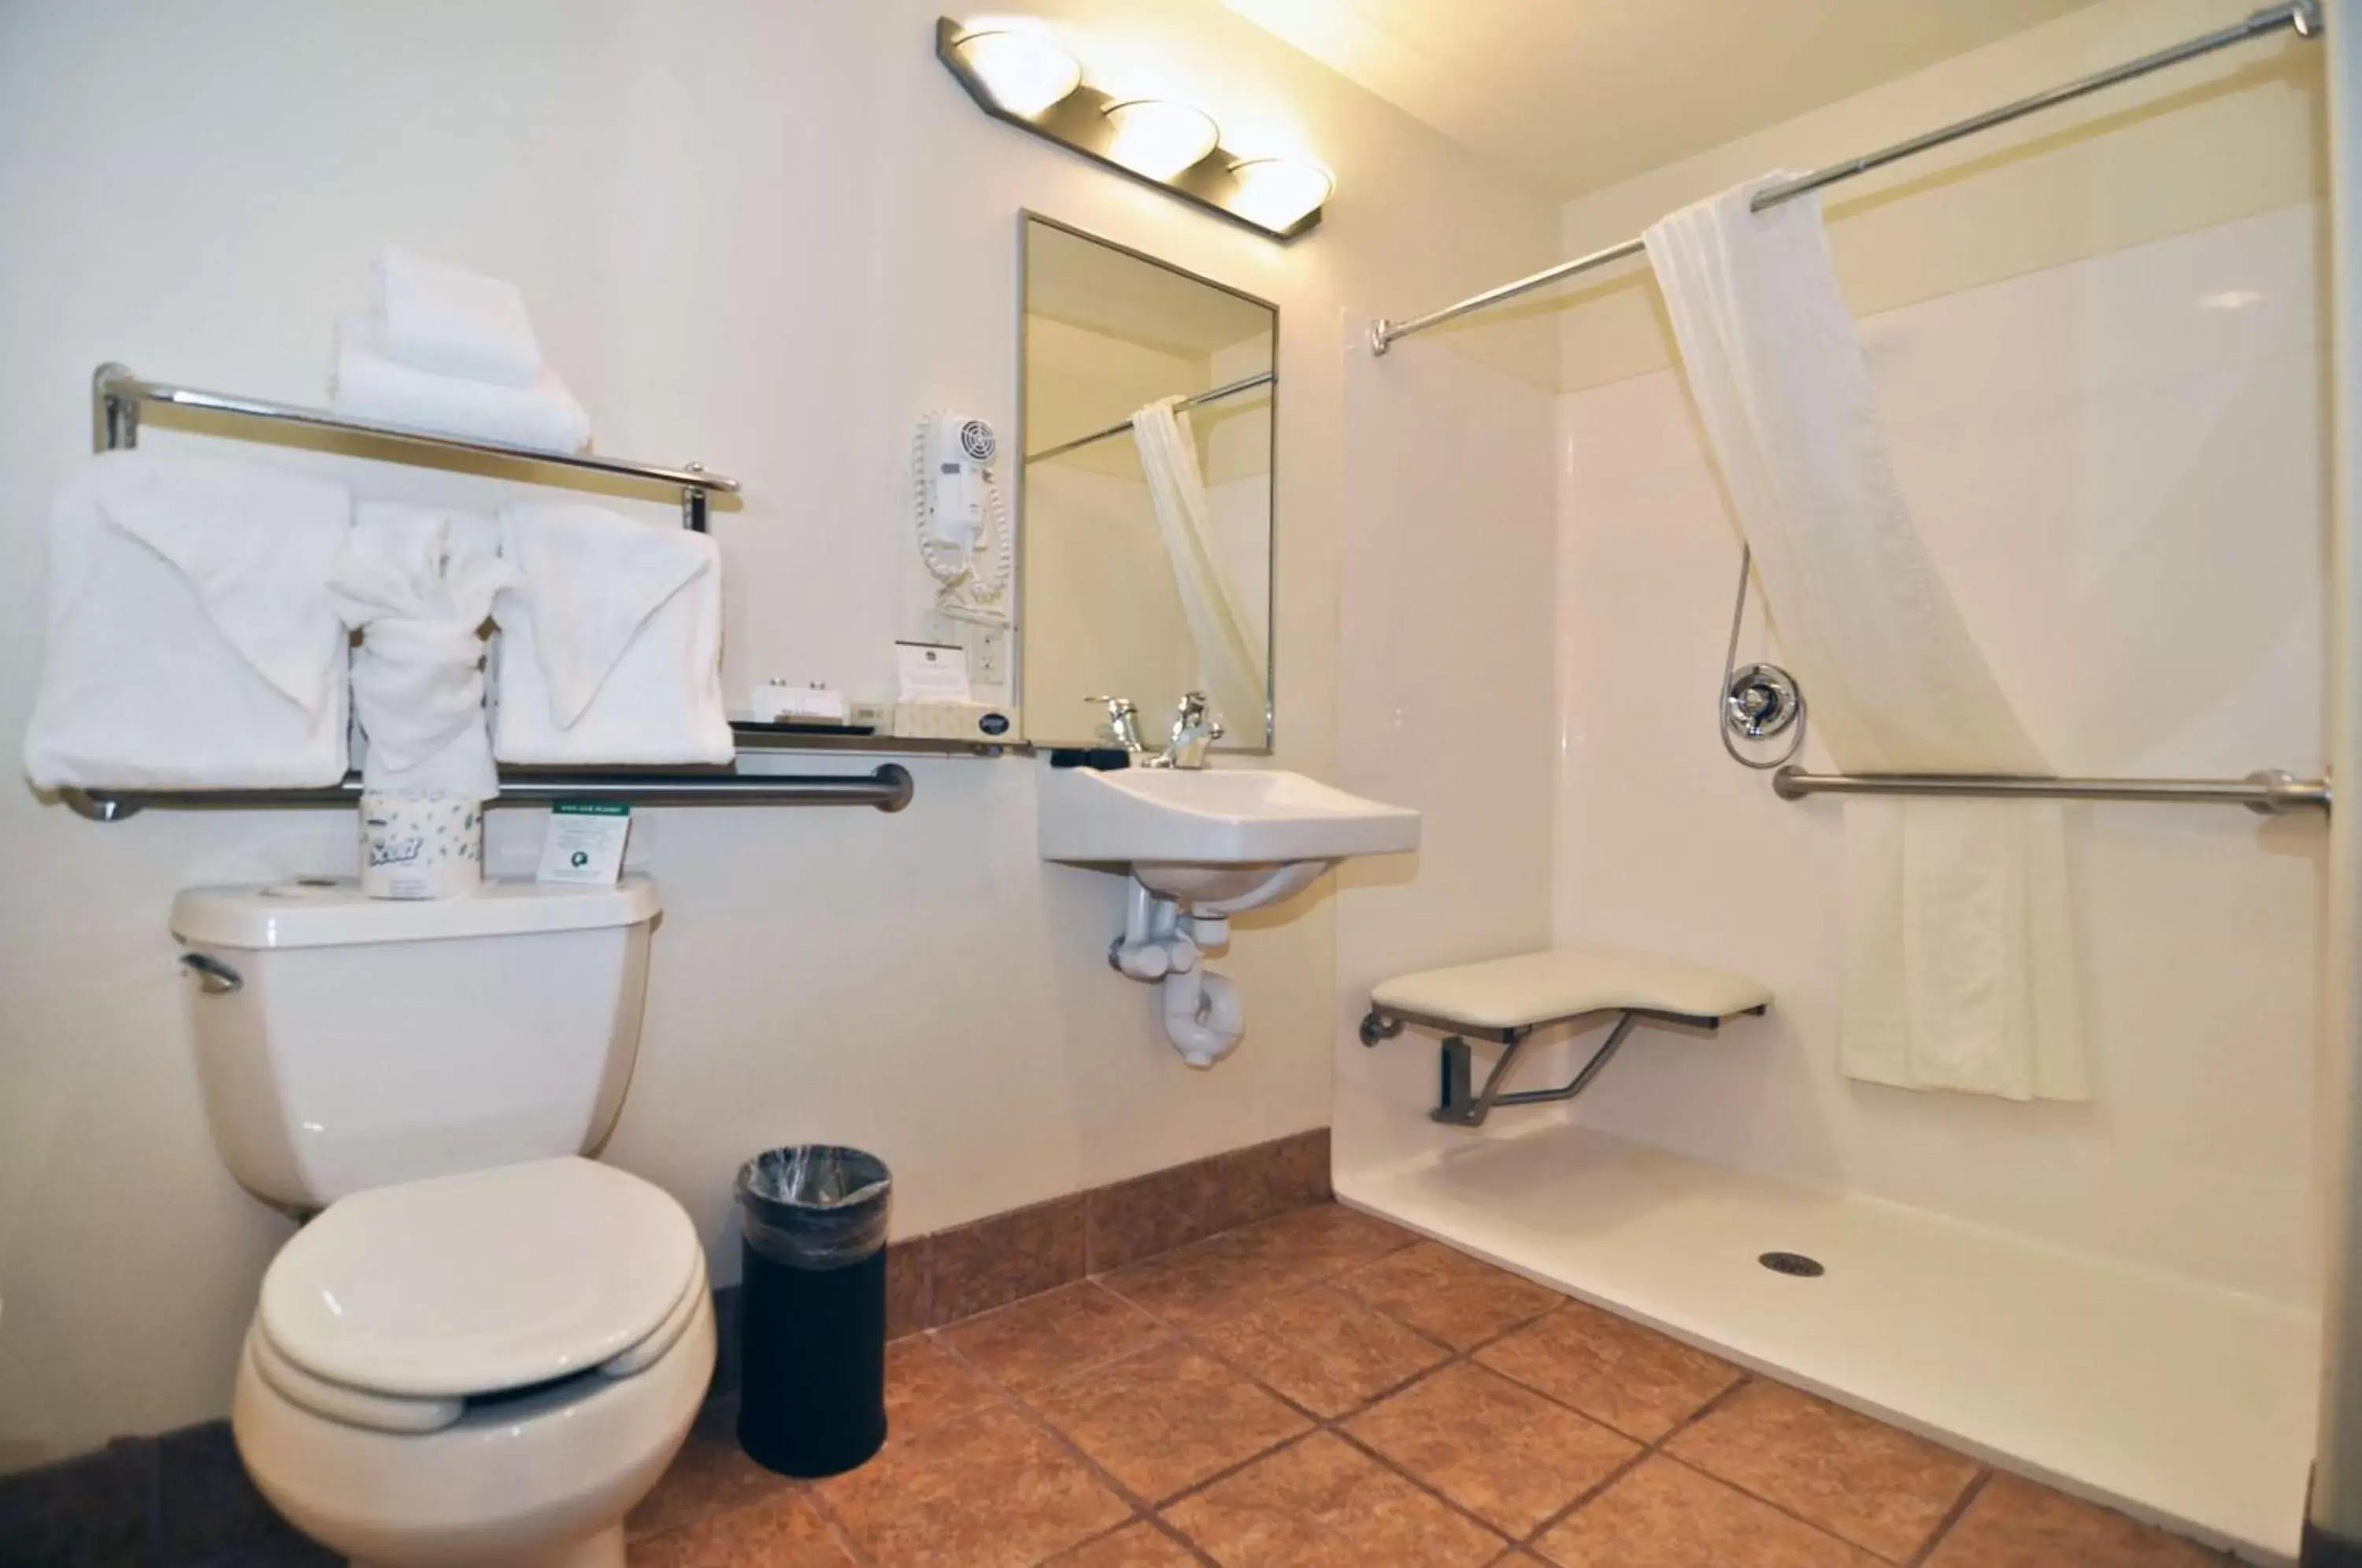 Photo of the whole room, Bathroom in Best Western Plus Eagleridge Inn & Suites